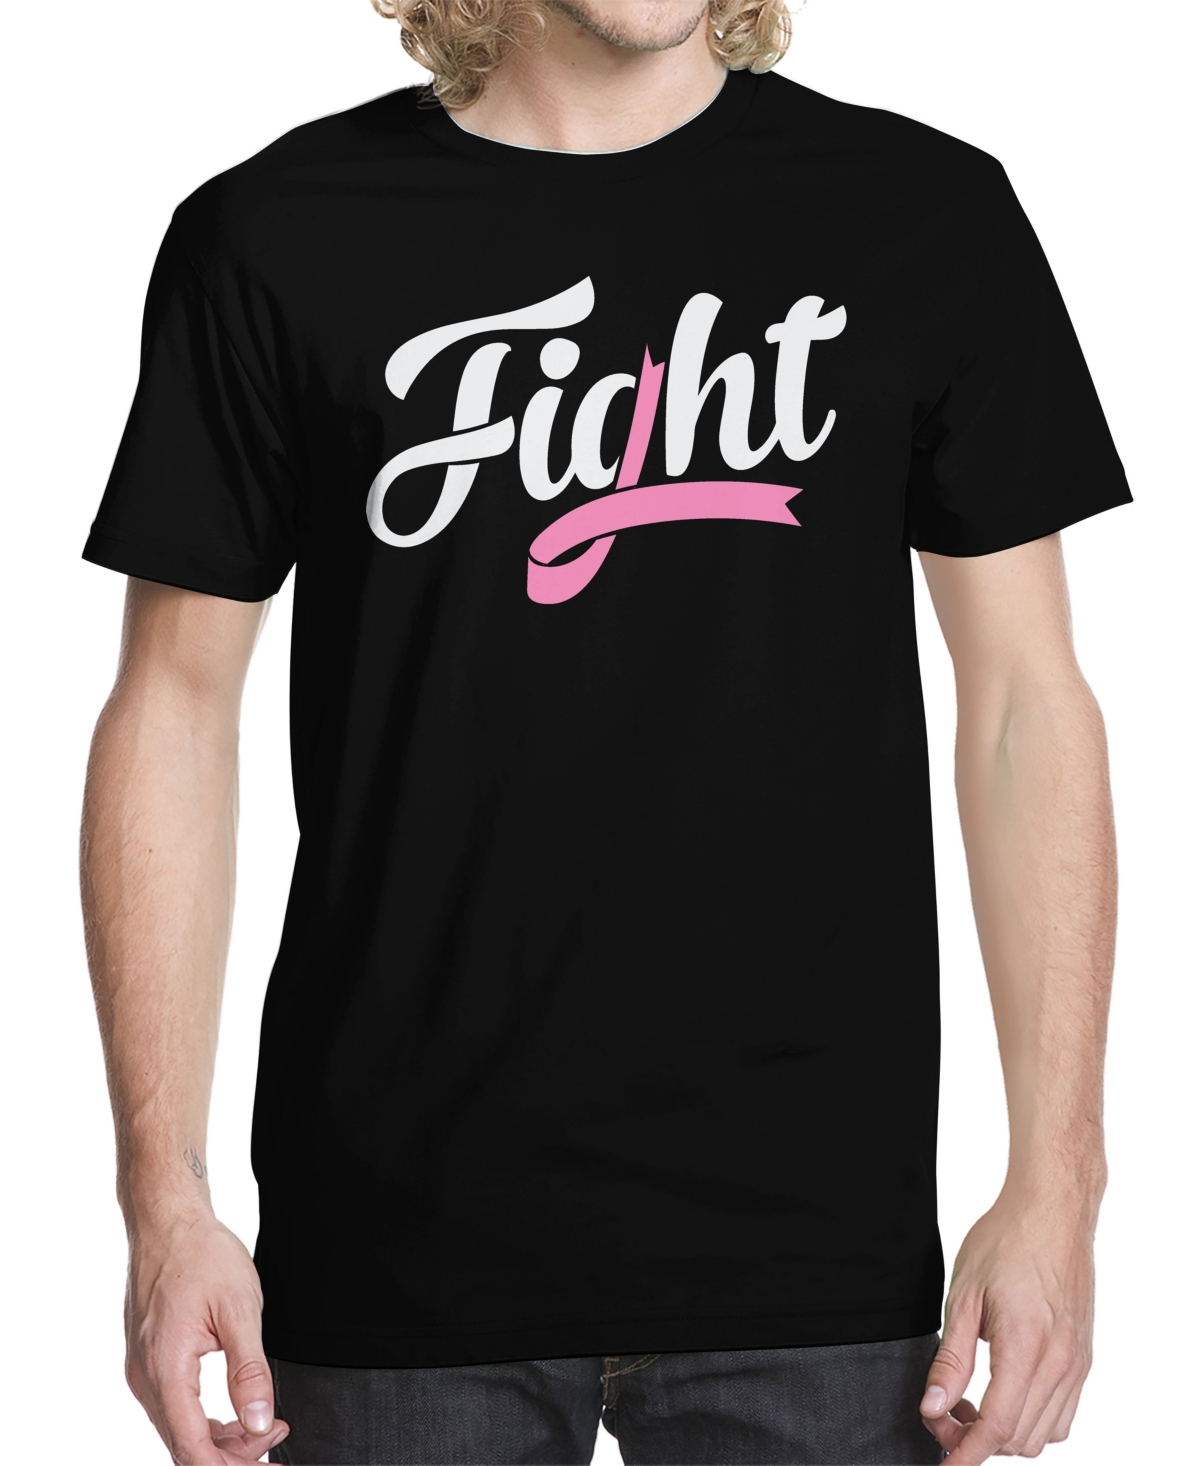 Men's Ribbon Fight Graphic T-shirt - Black